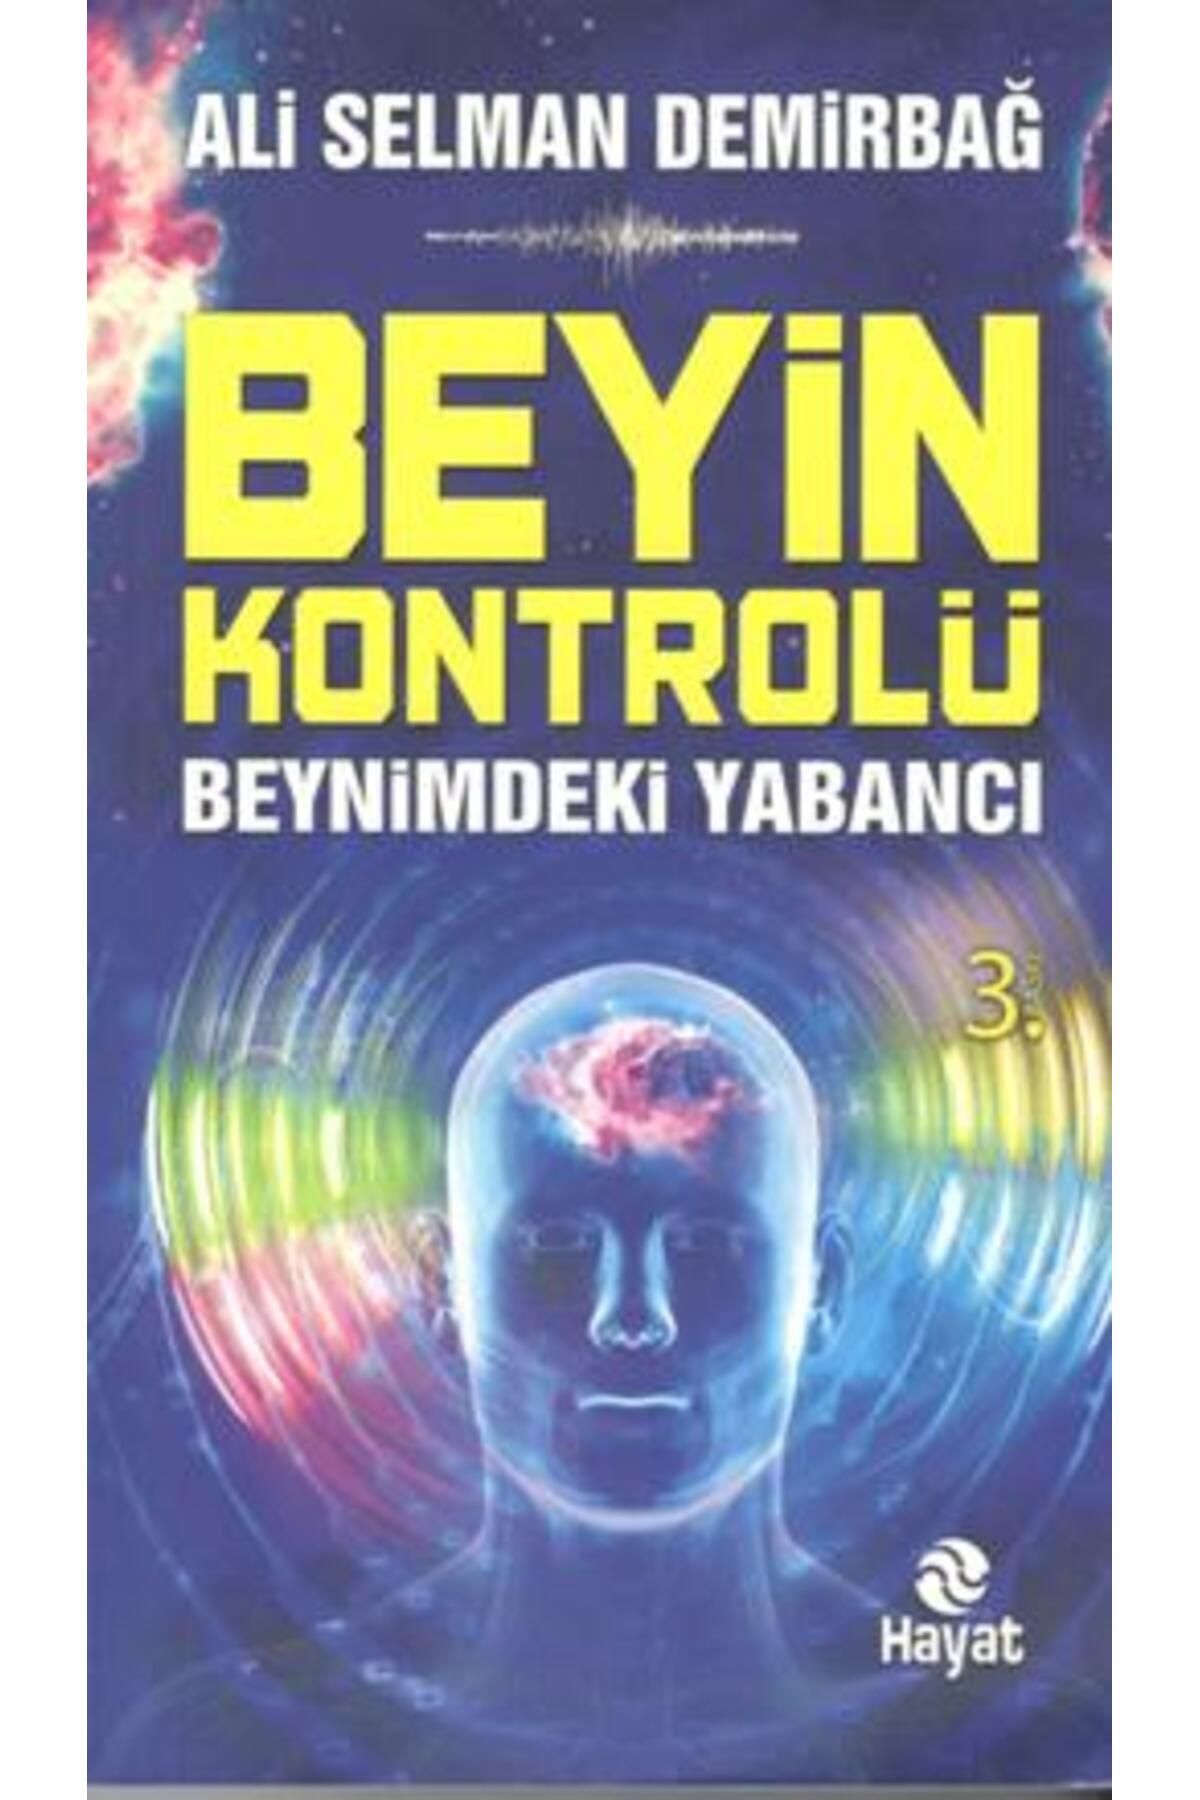 Hayat Yayınları Beyin Kontrolü Beynimdeki Yabancı kitabı - Ali Selman Demirbağ - Hayat Yayınları